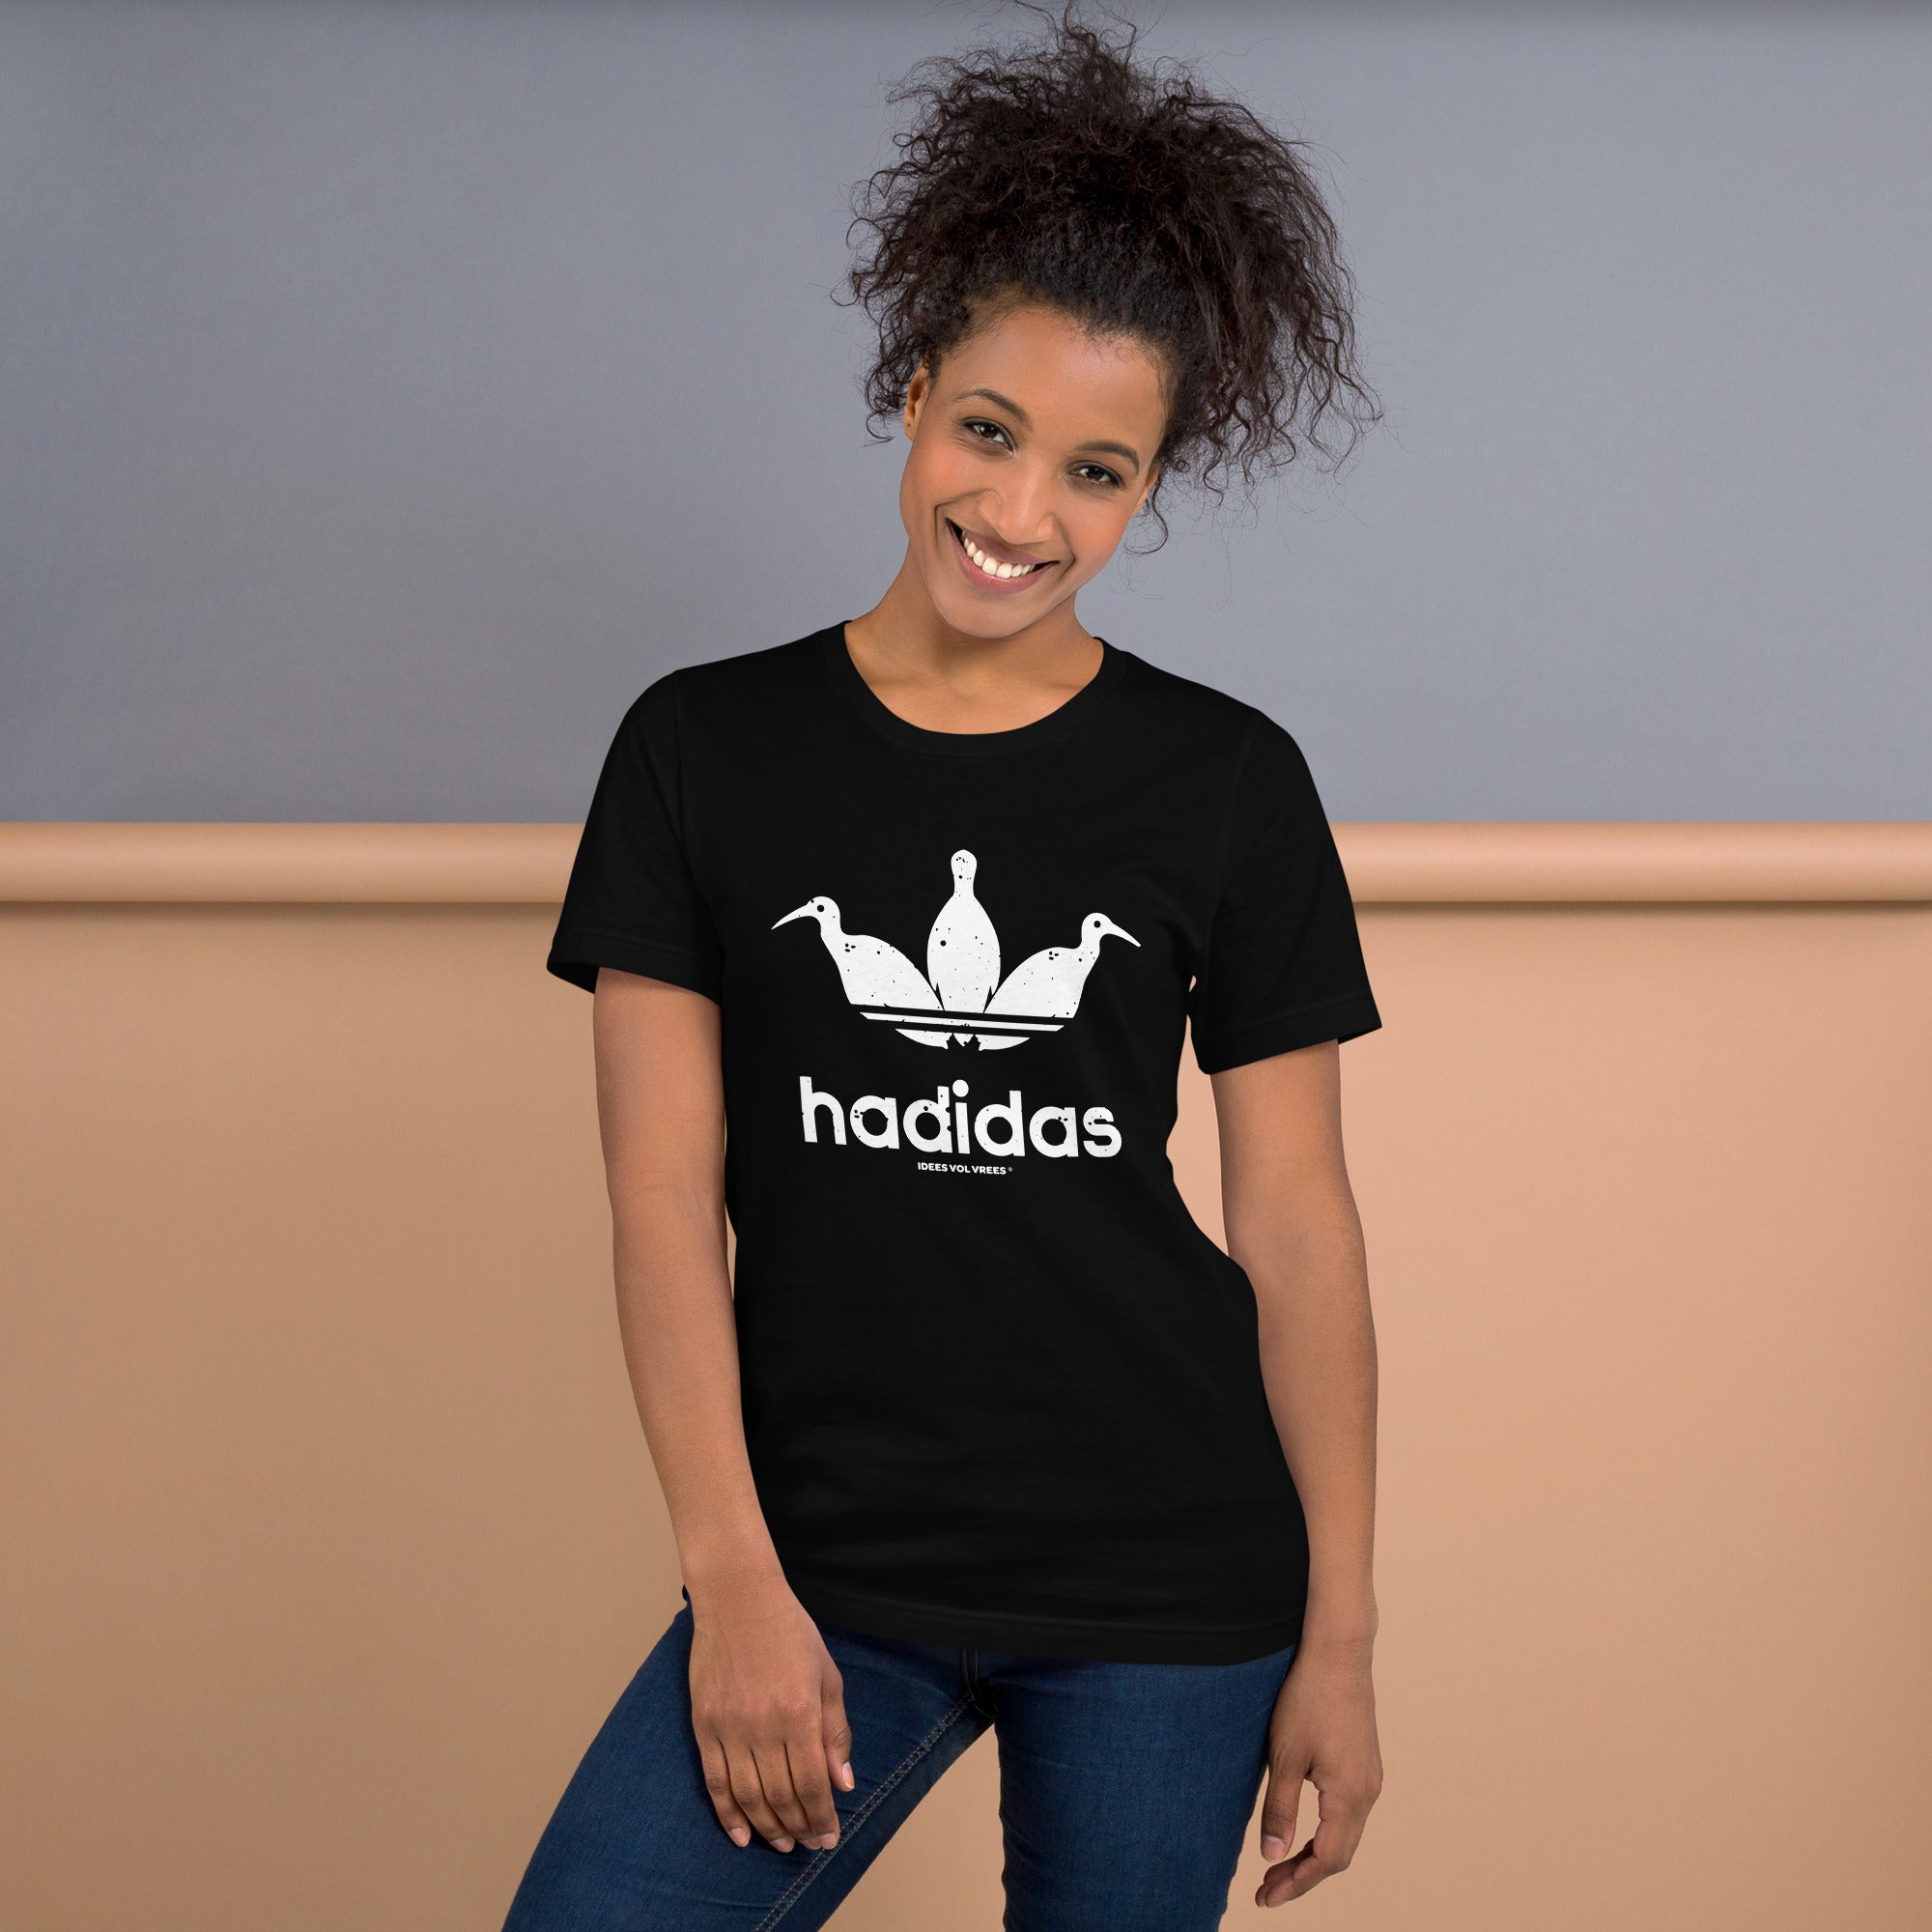 [INTERNASIONAAL] Idees Vol Vrees® Hadidas Women's T-shirt